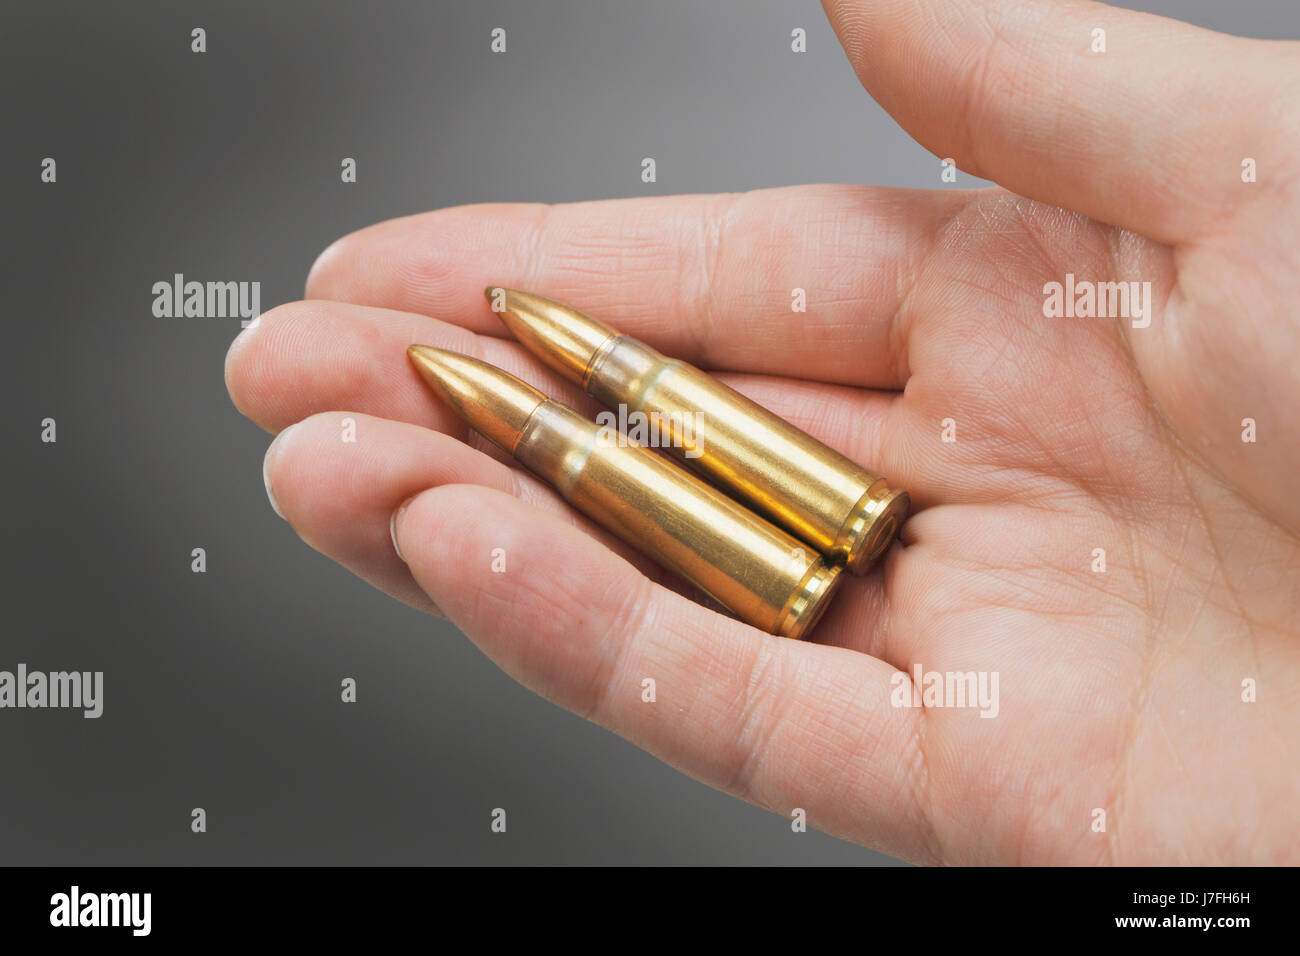 Objekt Objekte Munition Patrone Palm metallischen Patronen explosive Kugel  Stockfotografie - Alamy